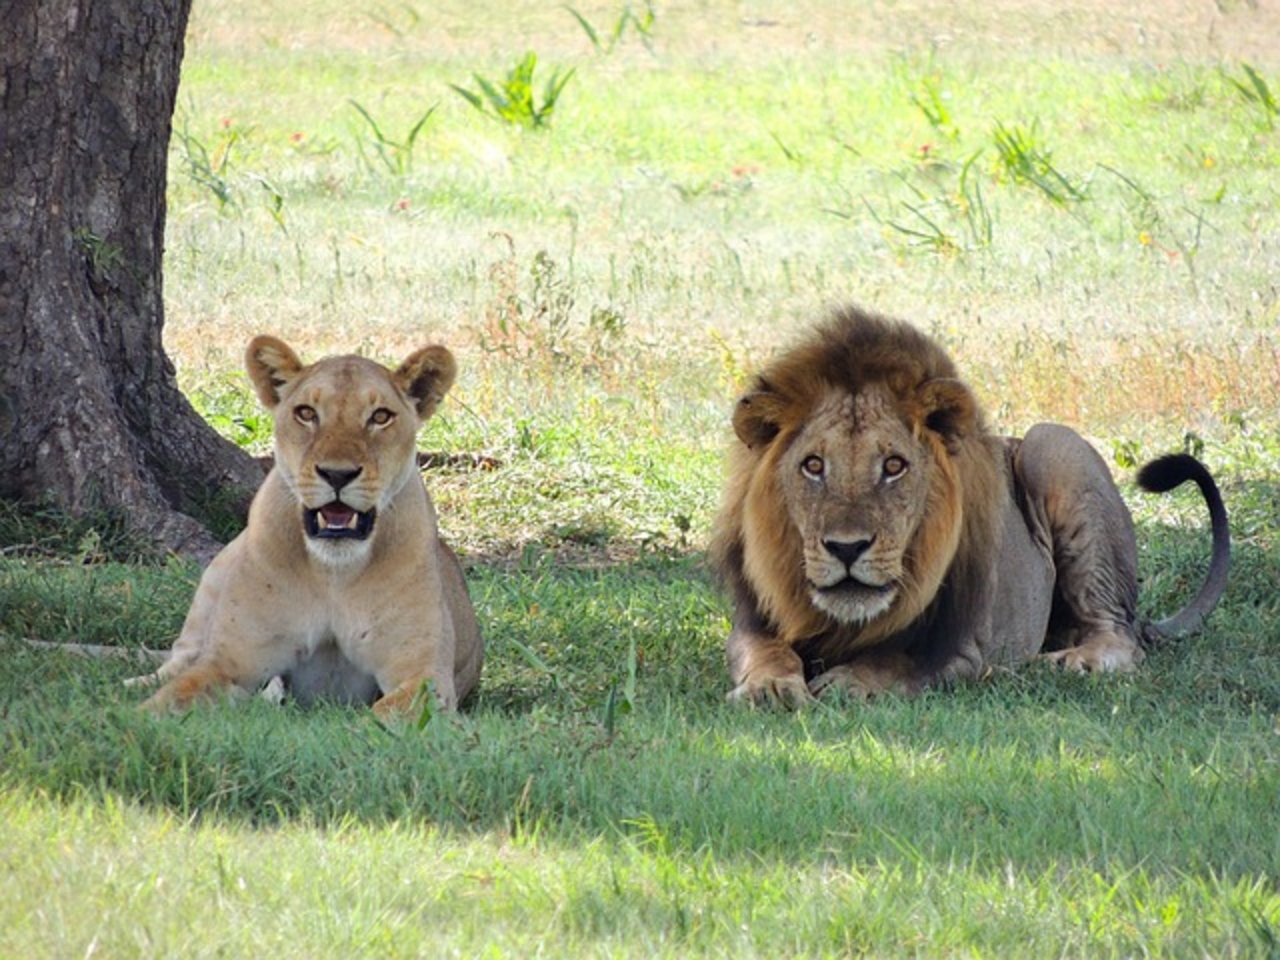 Löwen sollen einen toten Wilderer gefressen haben. (Symbolbild Pixabay)